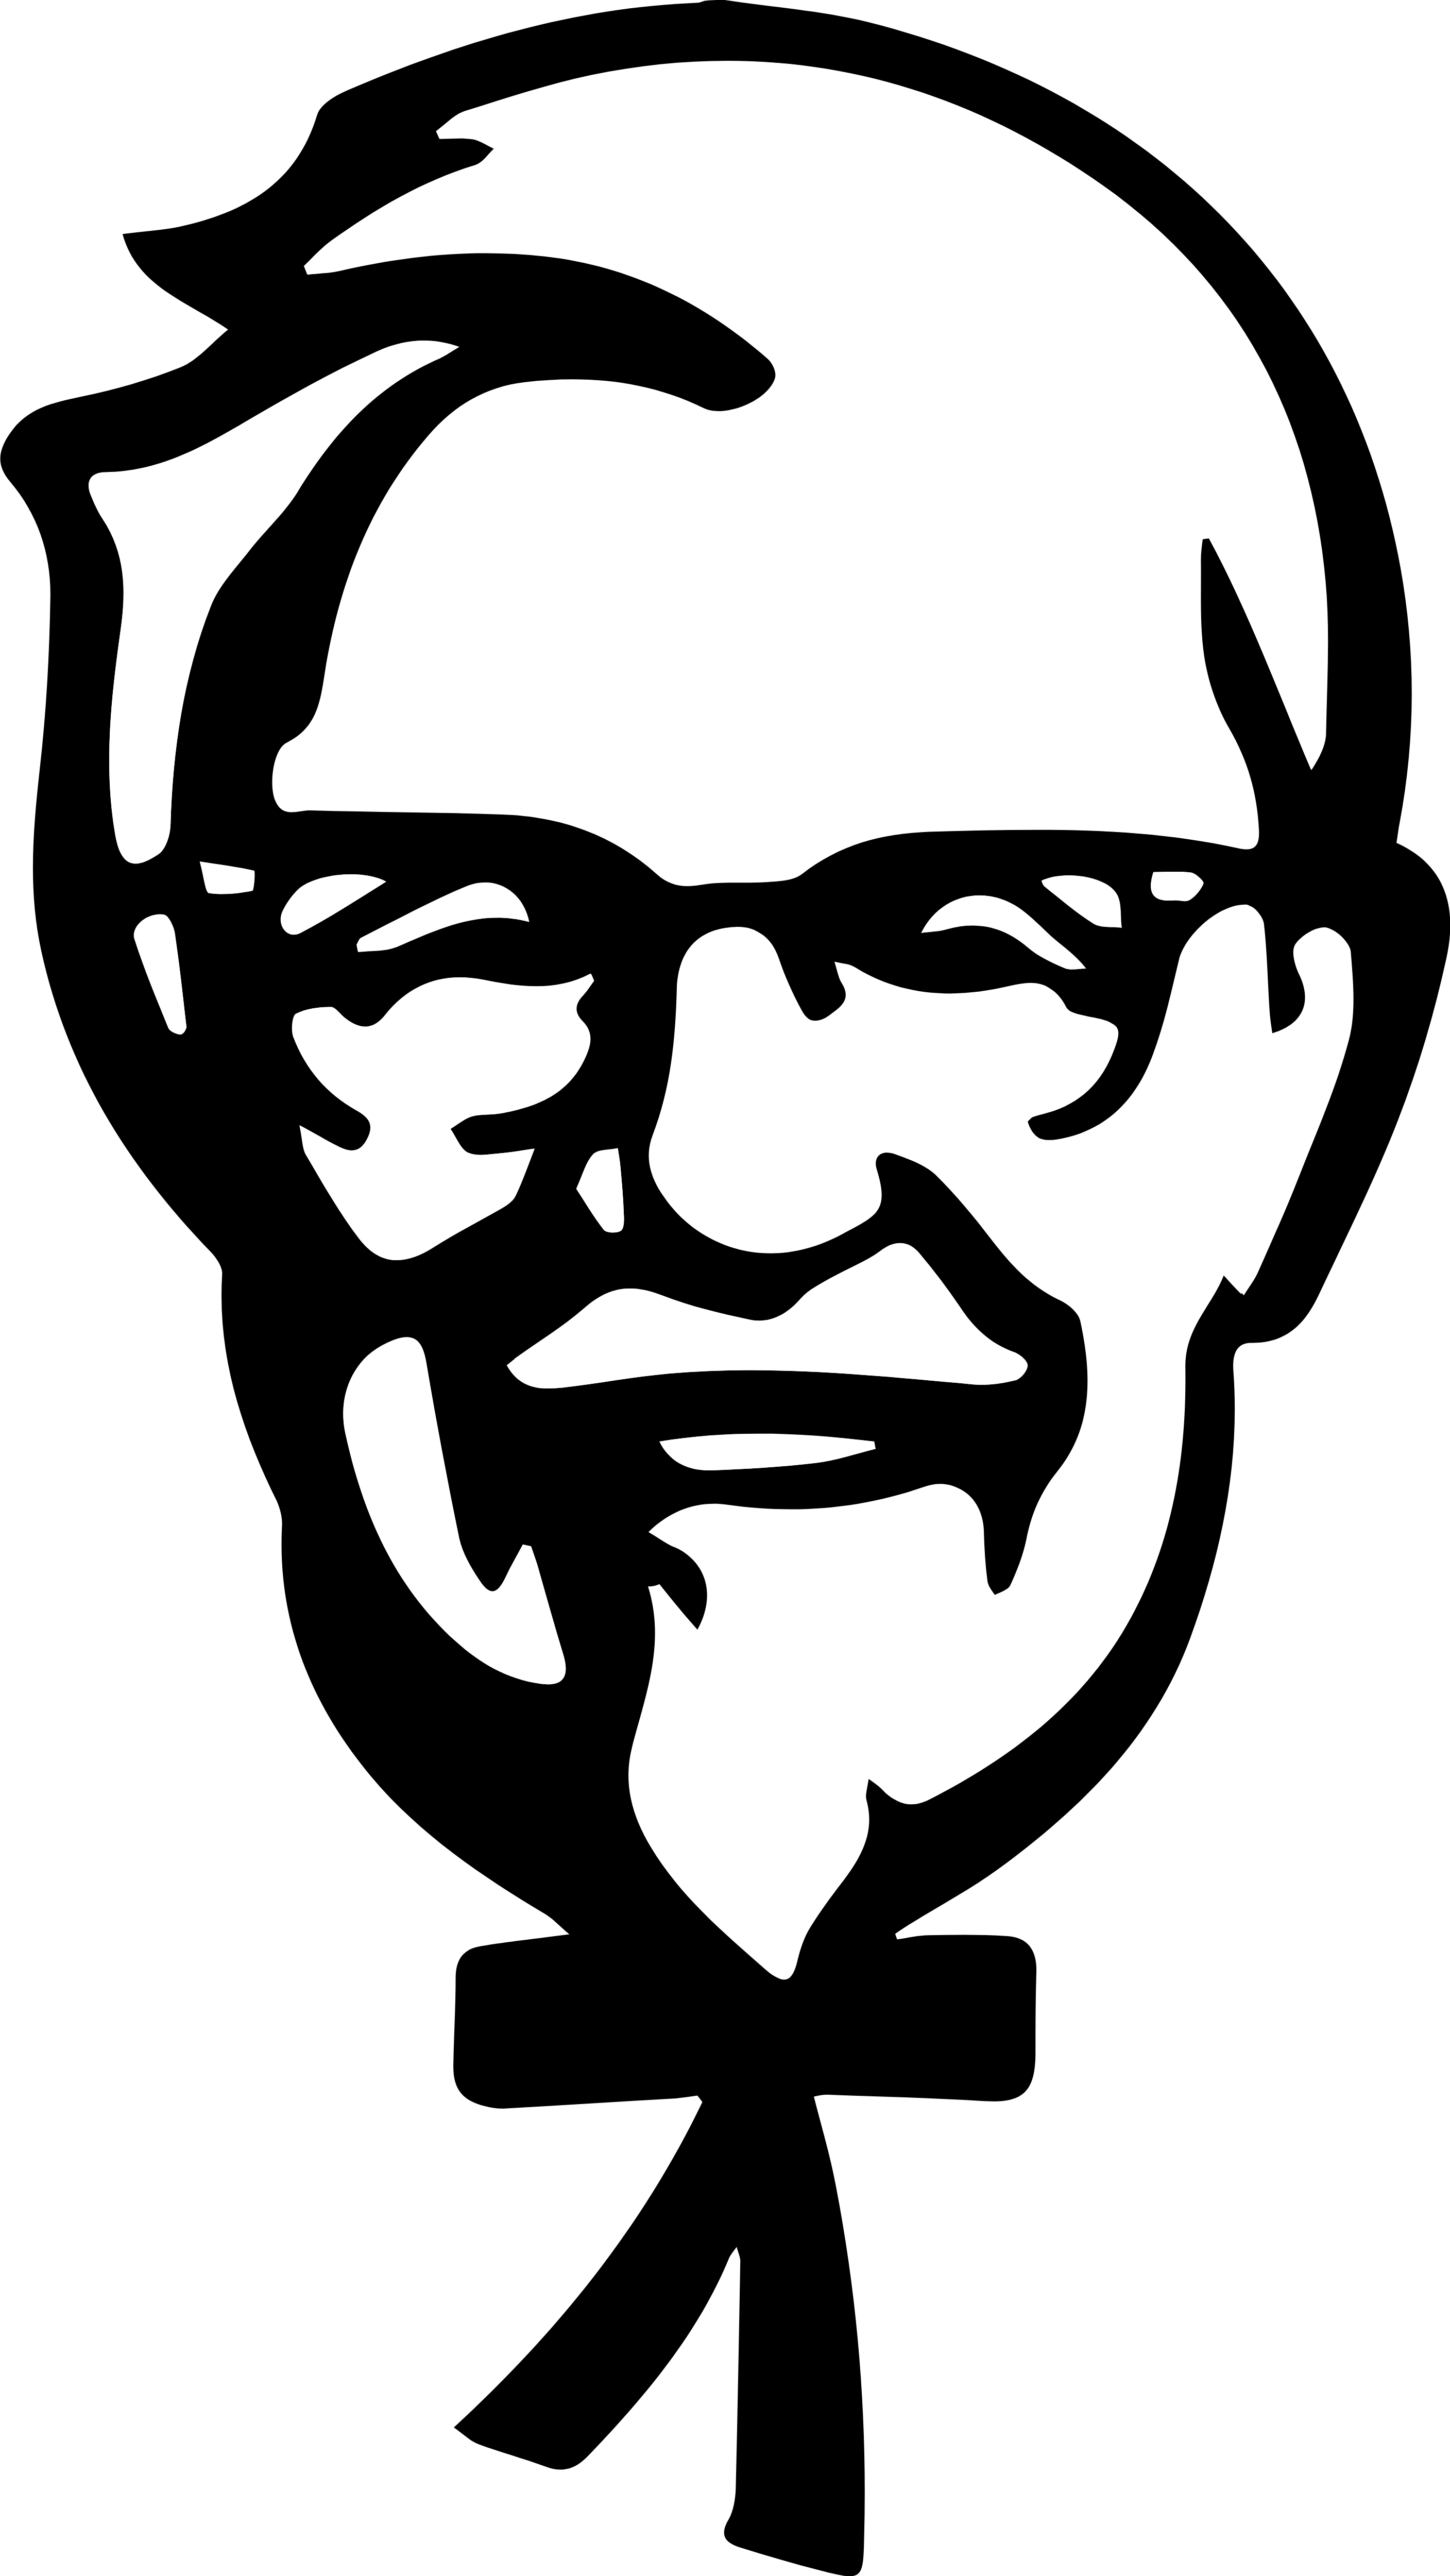 KFC Logo PNG